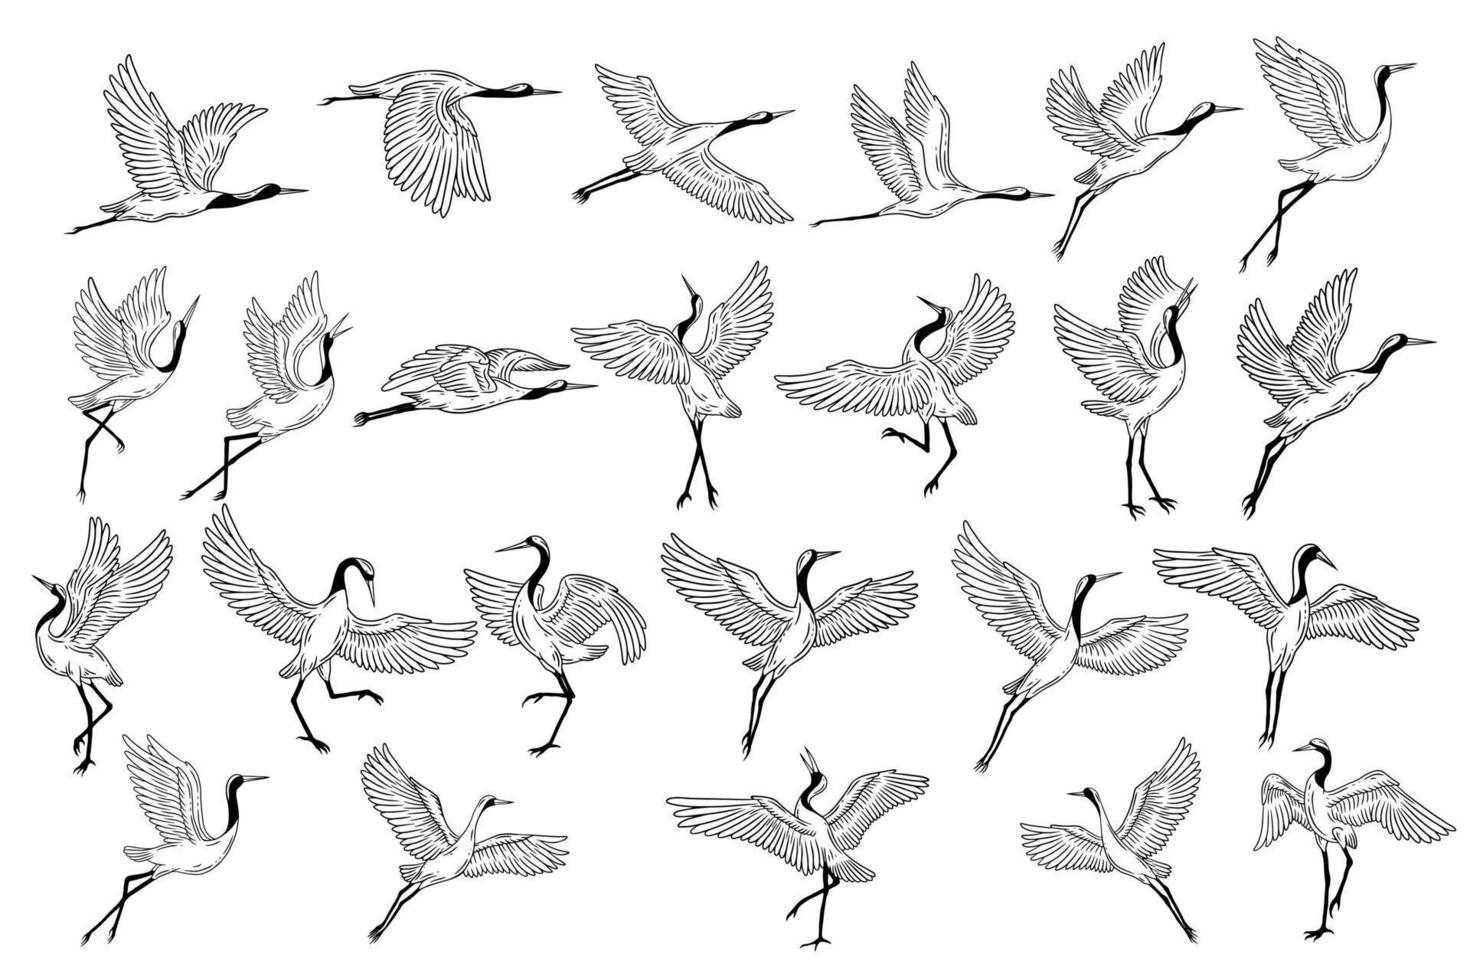 ensemble méga collection bundle cigogne oiseau volant tropical dessin animé oiseaux sauvages grues dessinés à la main vecteur